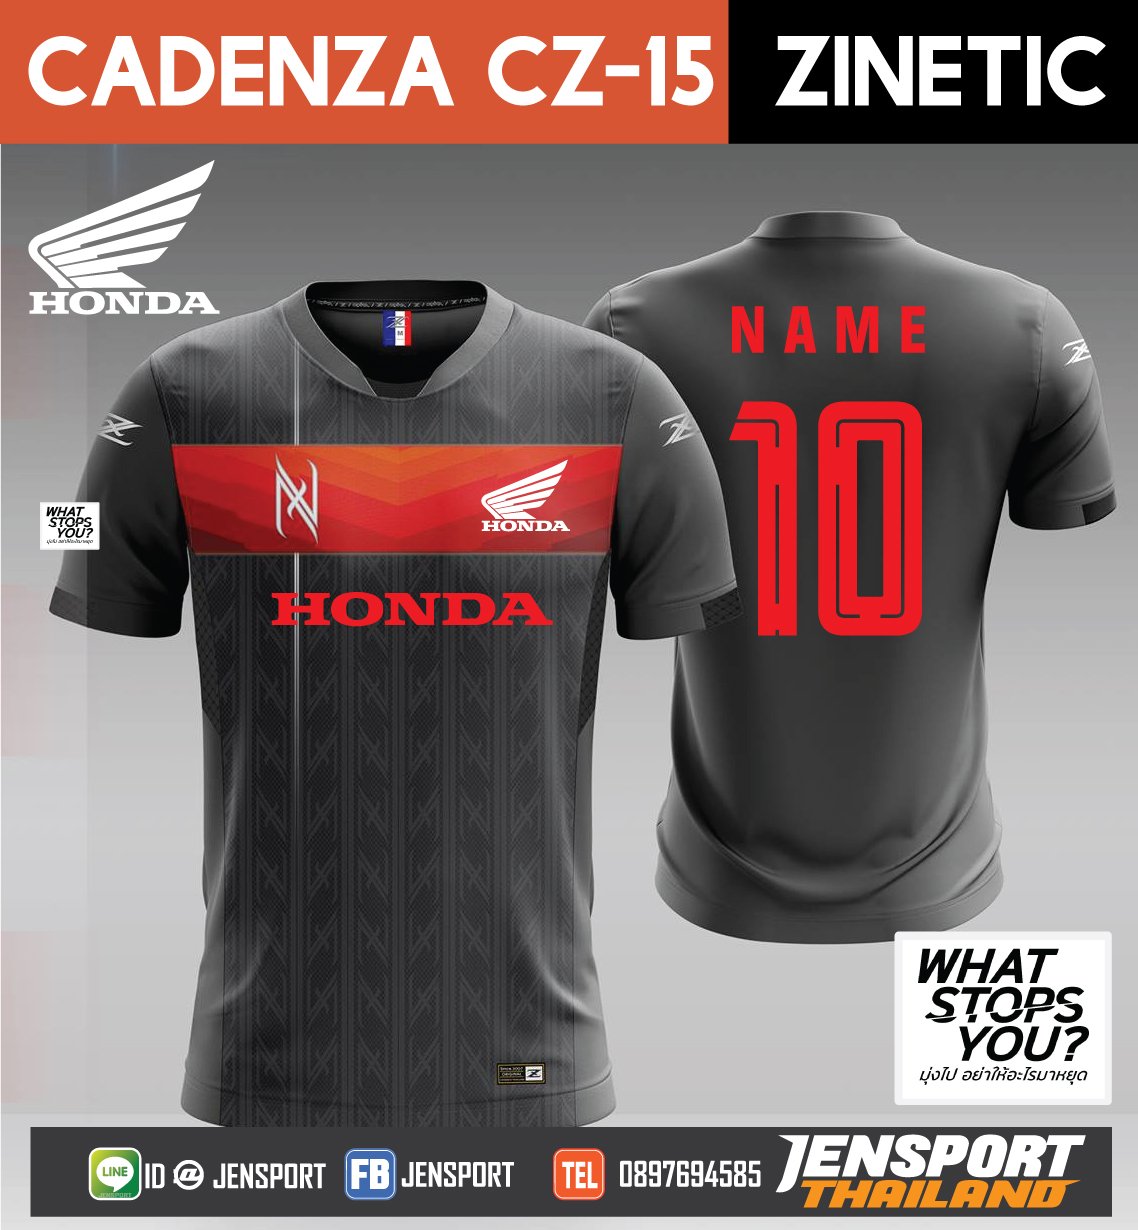 เสื้อ-Cadenza-CZ-15-ทีม-HONDA-ปี-2019 สีเทา